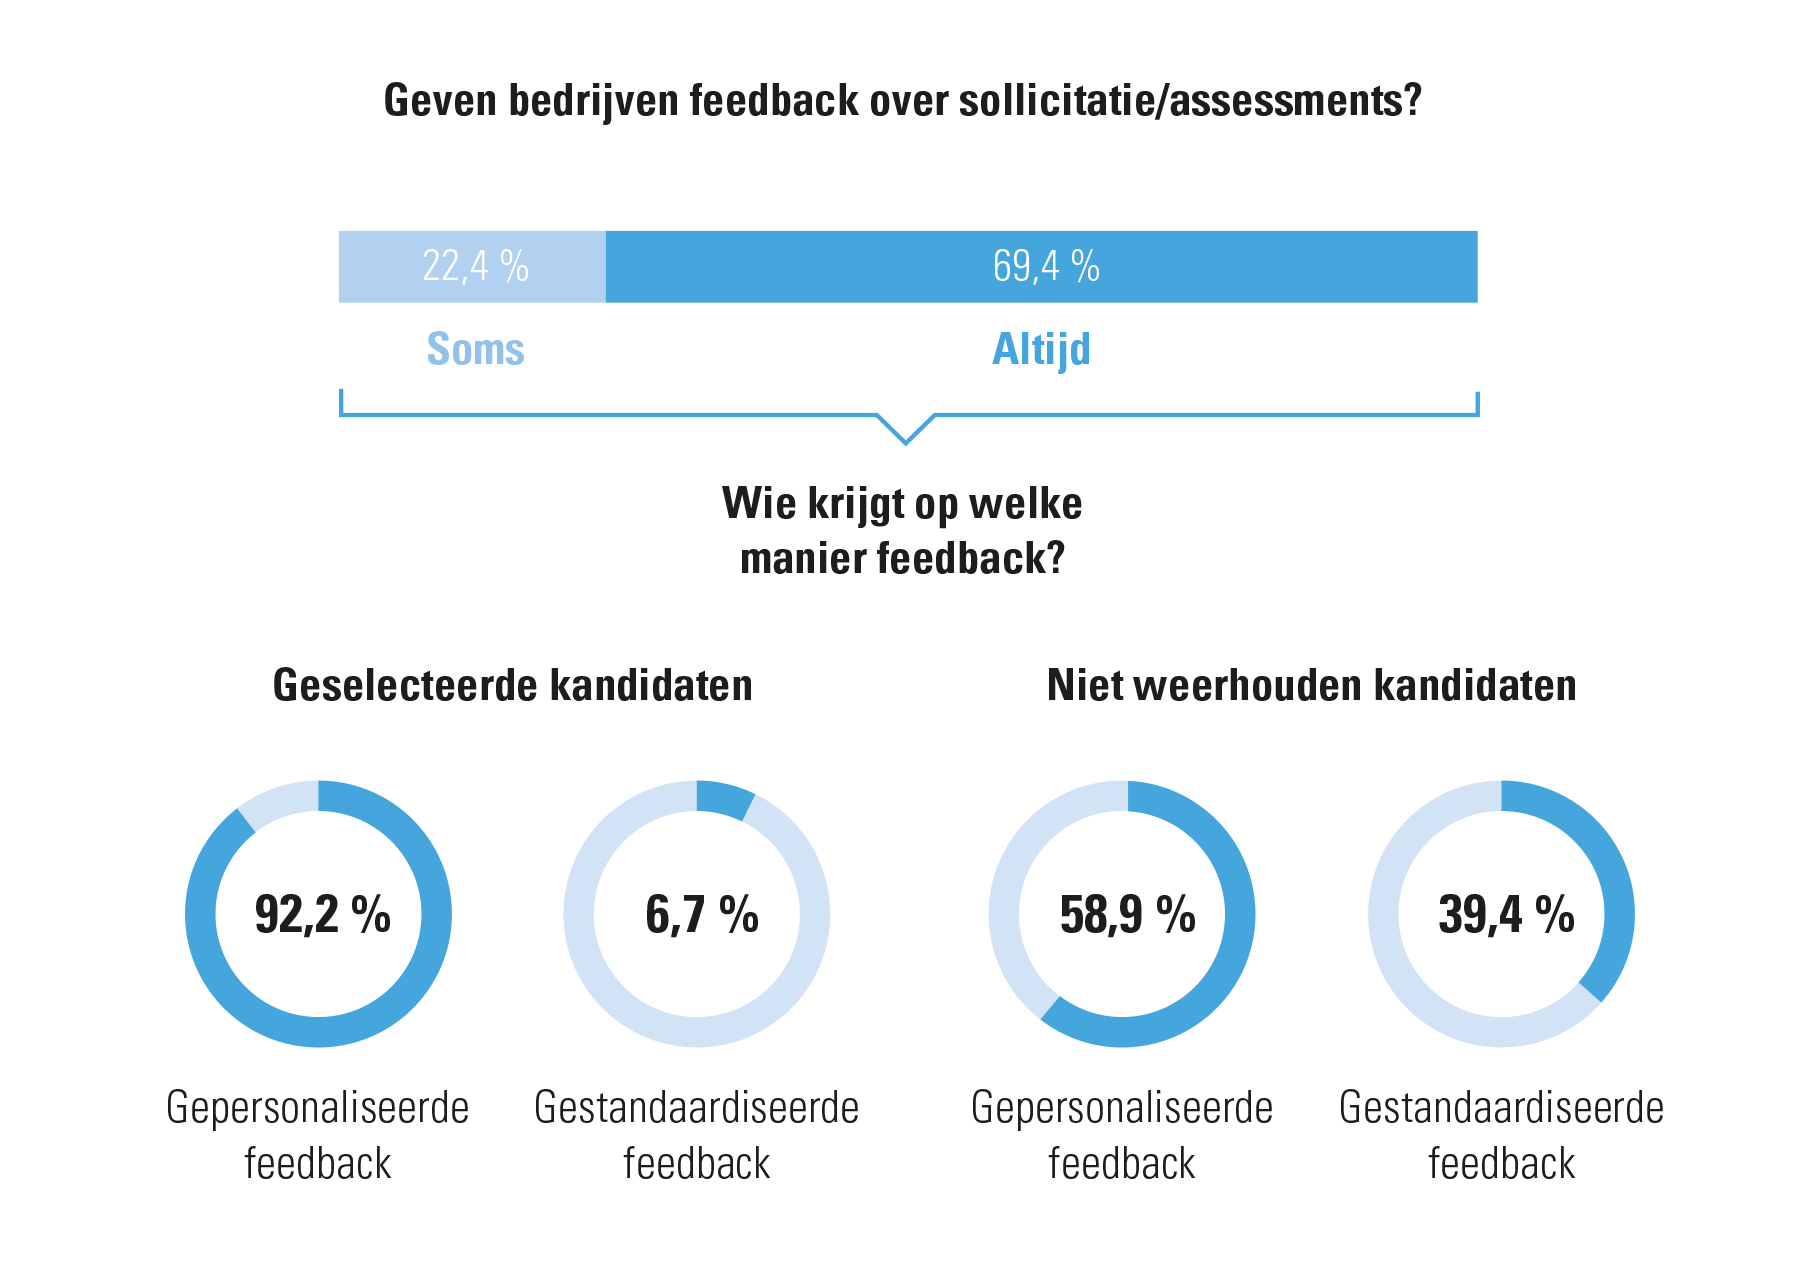 Figuur 2: Geven bedrijven feedback over een sollicitatie of assessment?